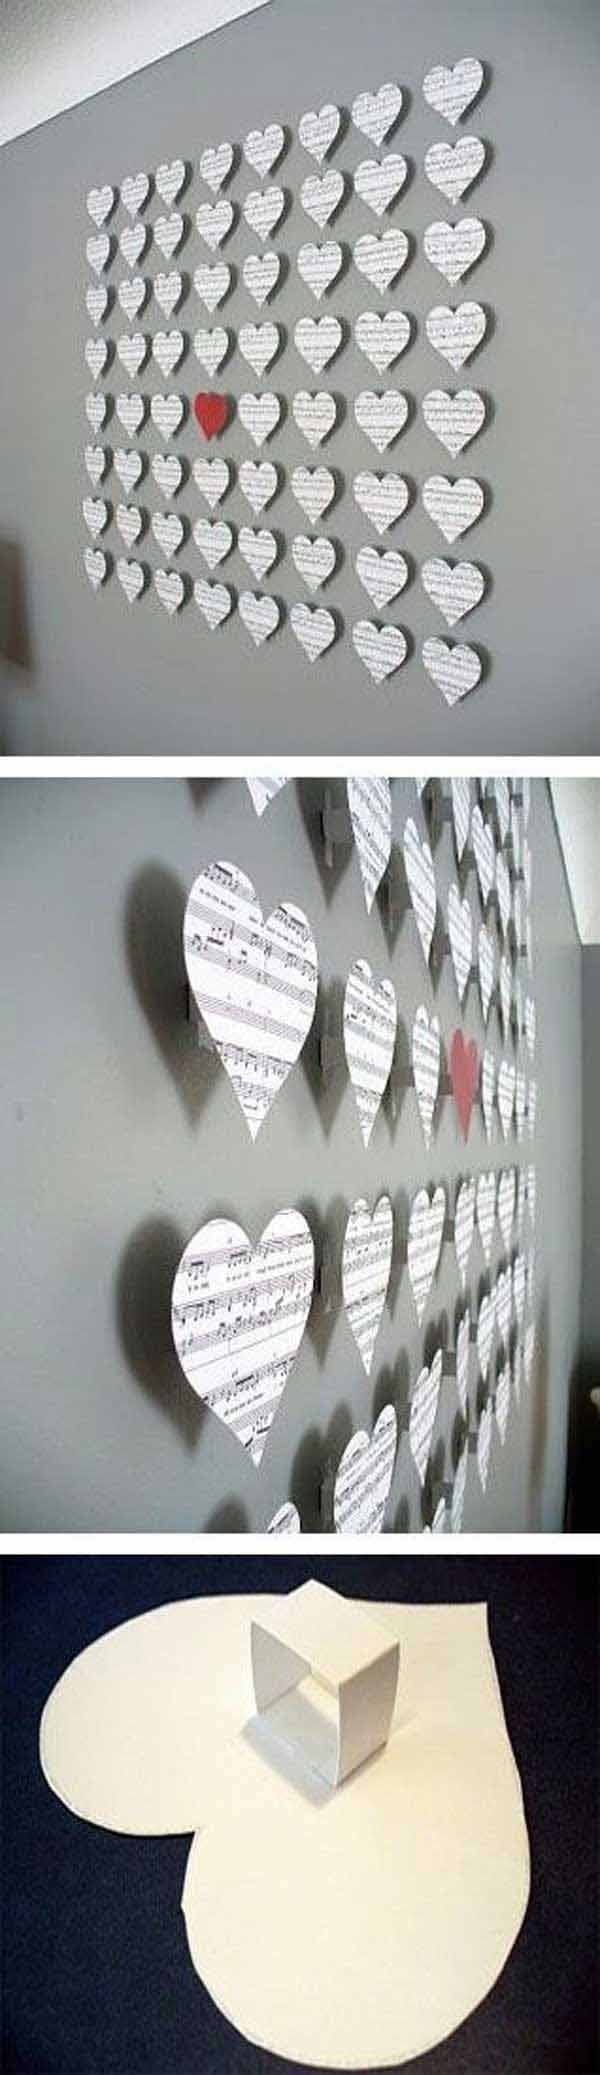 Diversos cors fets per decorar una paret